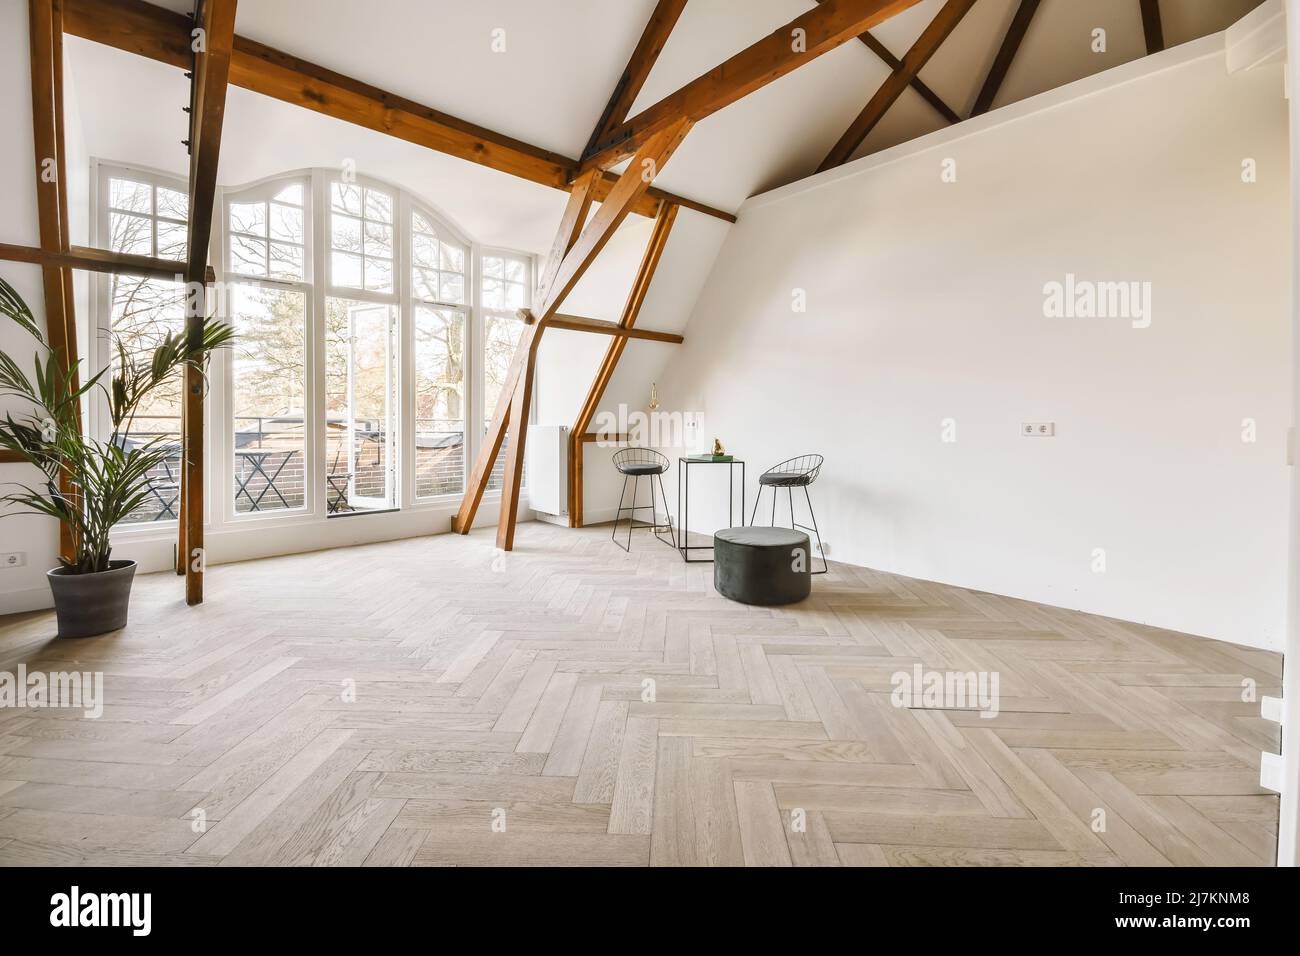 Piccolo tavolo quadrato con sedie e pouf posto in una spaziosa stanza con pavimento in legno e travi decorate con piante in vaso in luce naturale Foto Stock